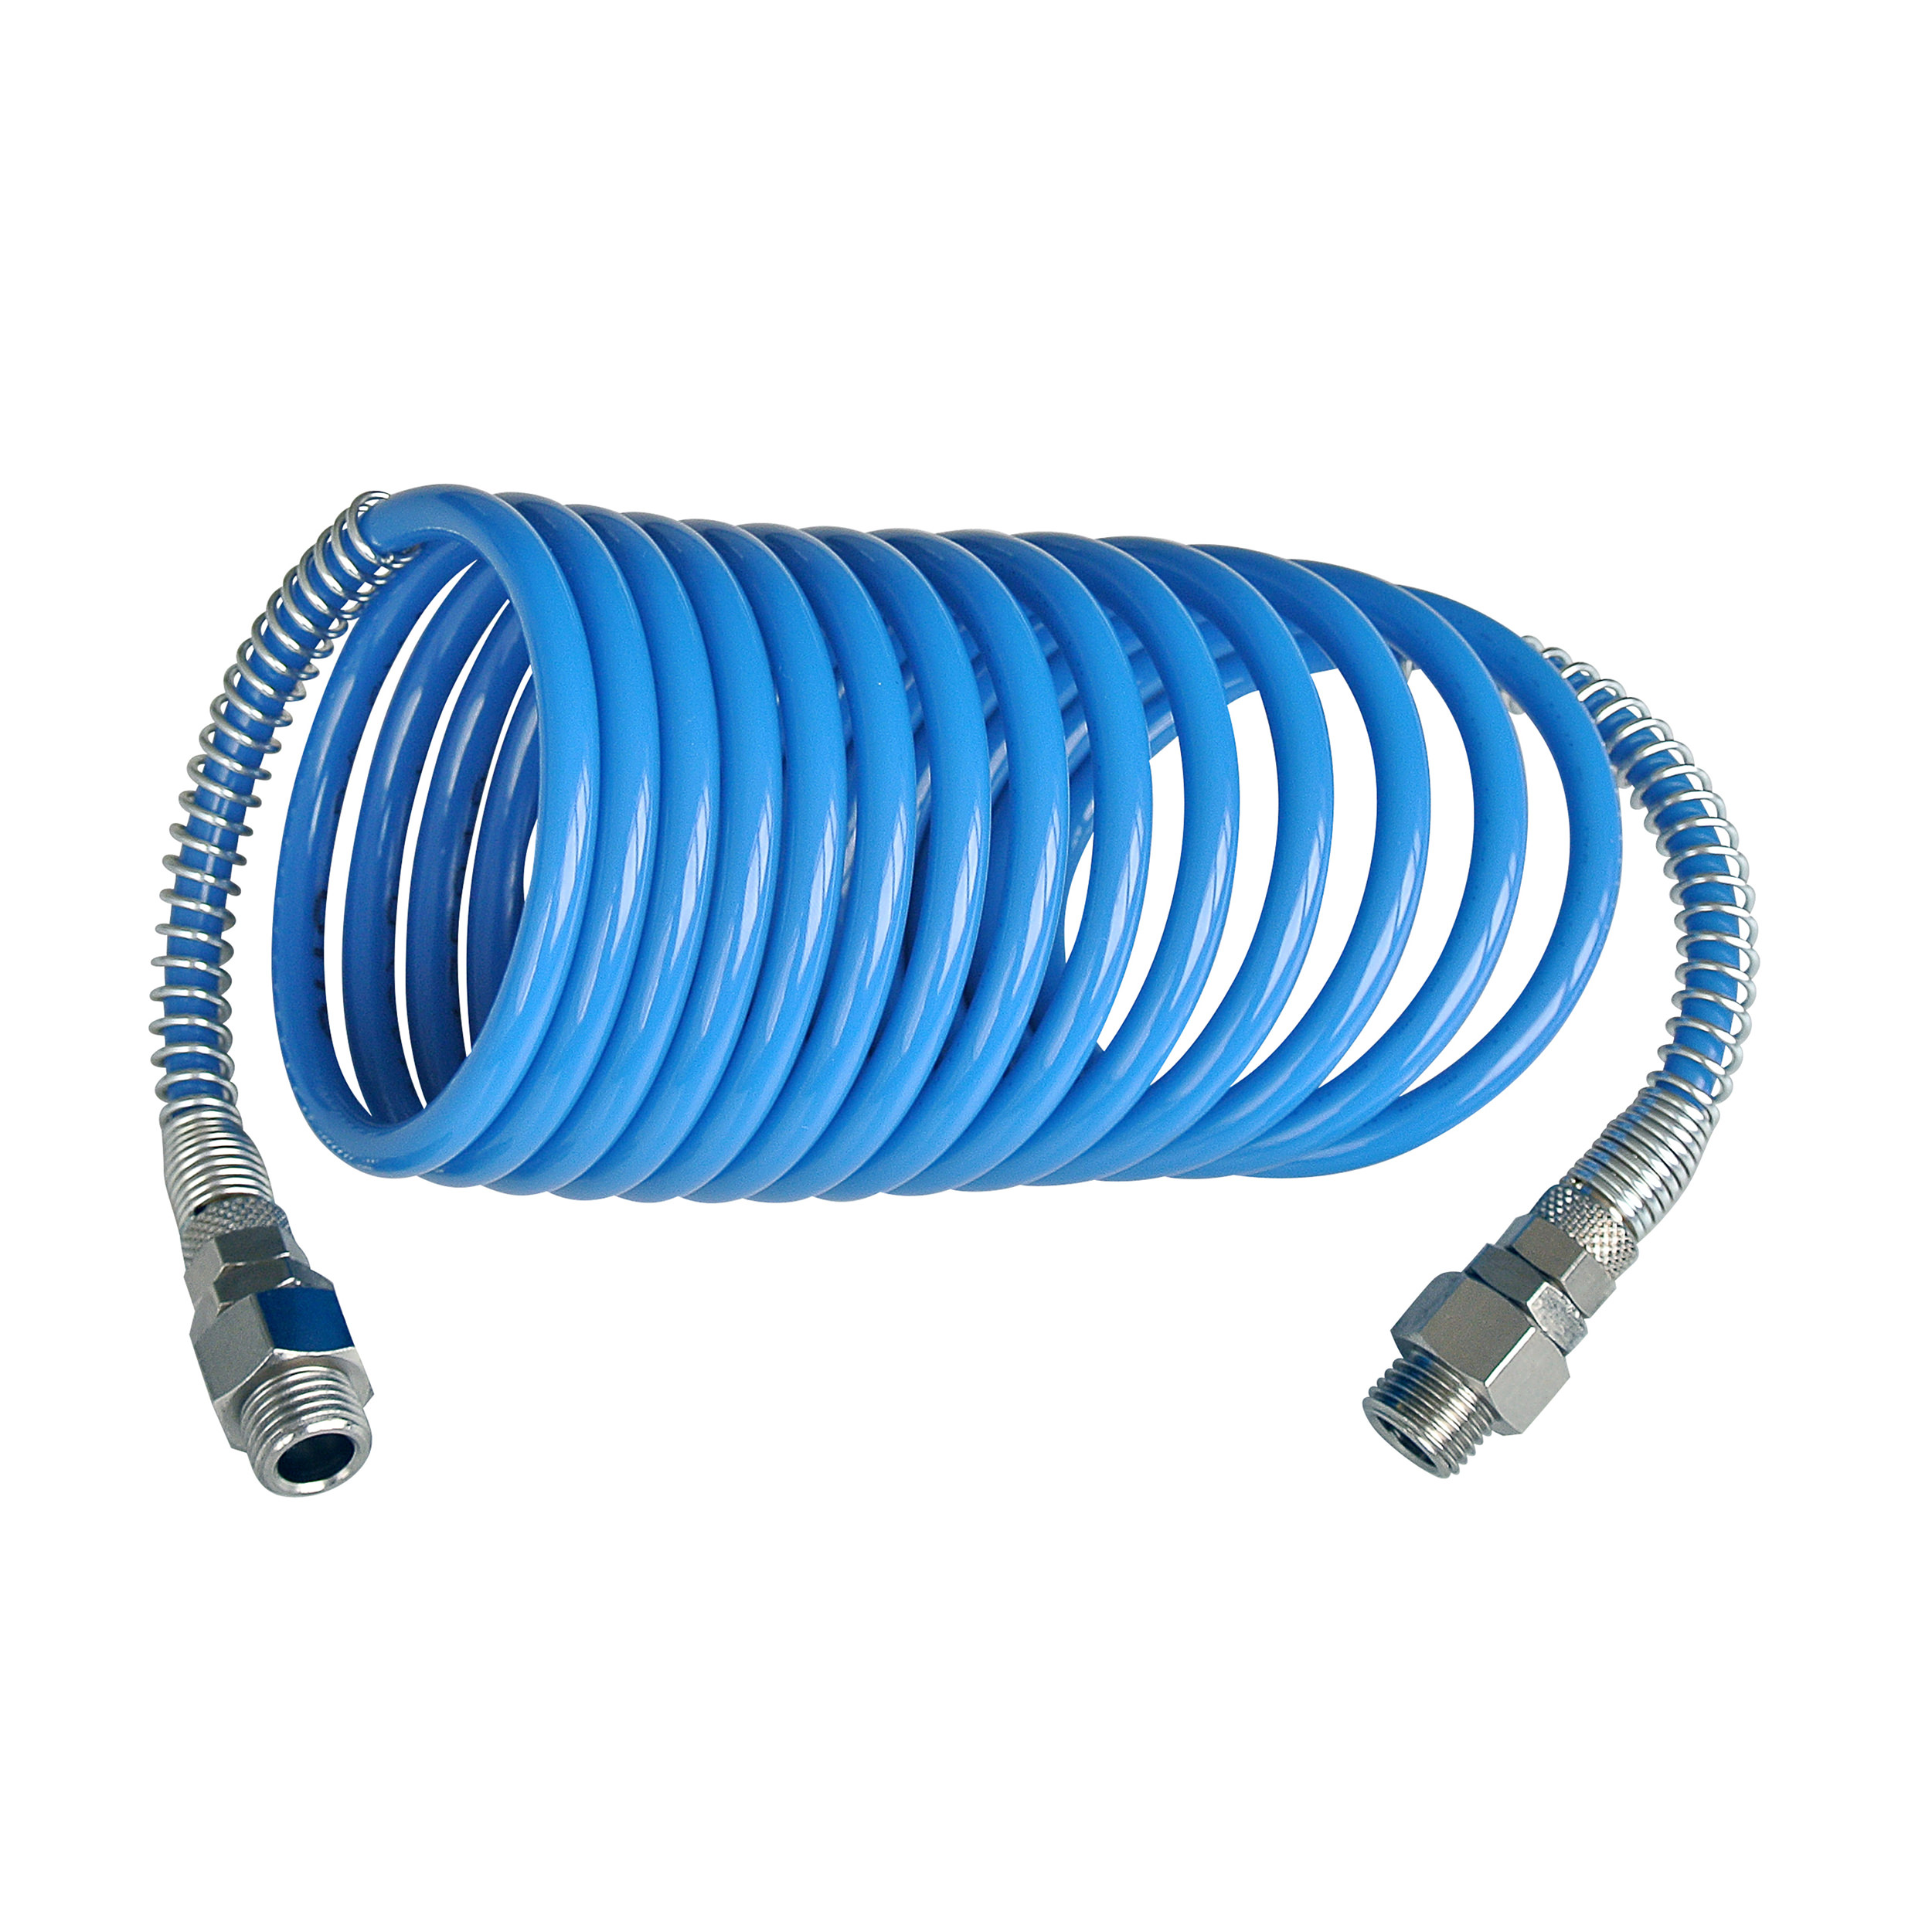 Spiral hose, polyamide 12, D × d (mm): Ø6 × 4 mm, working length: 2.5 m, OD 75 mm, G¼ male, WP at 21 °C: 487 psi